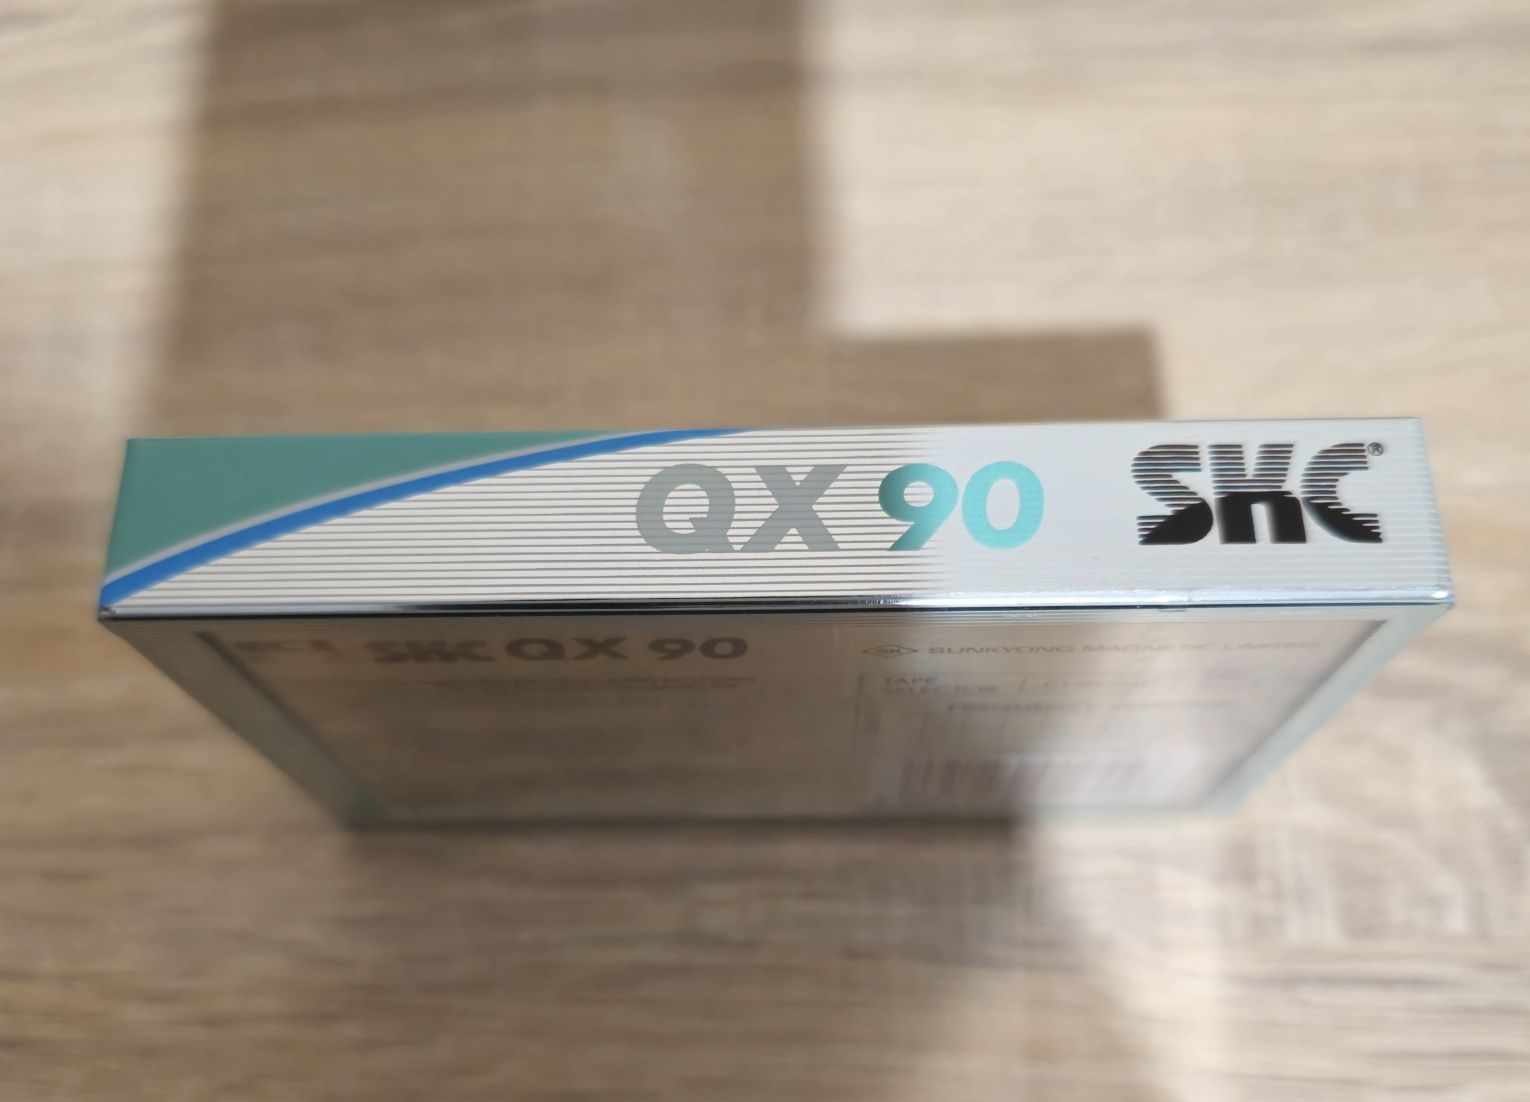 Аудиокассета/кассета  SKS QX 90